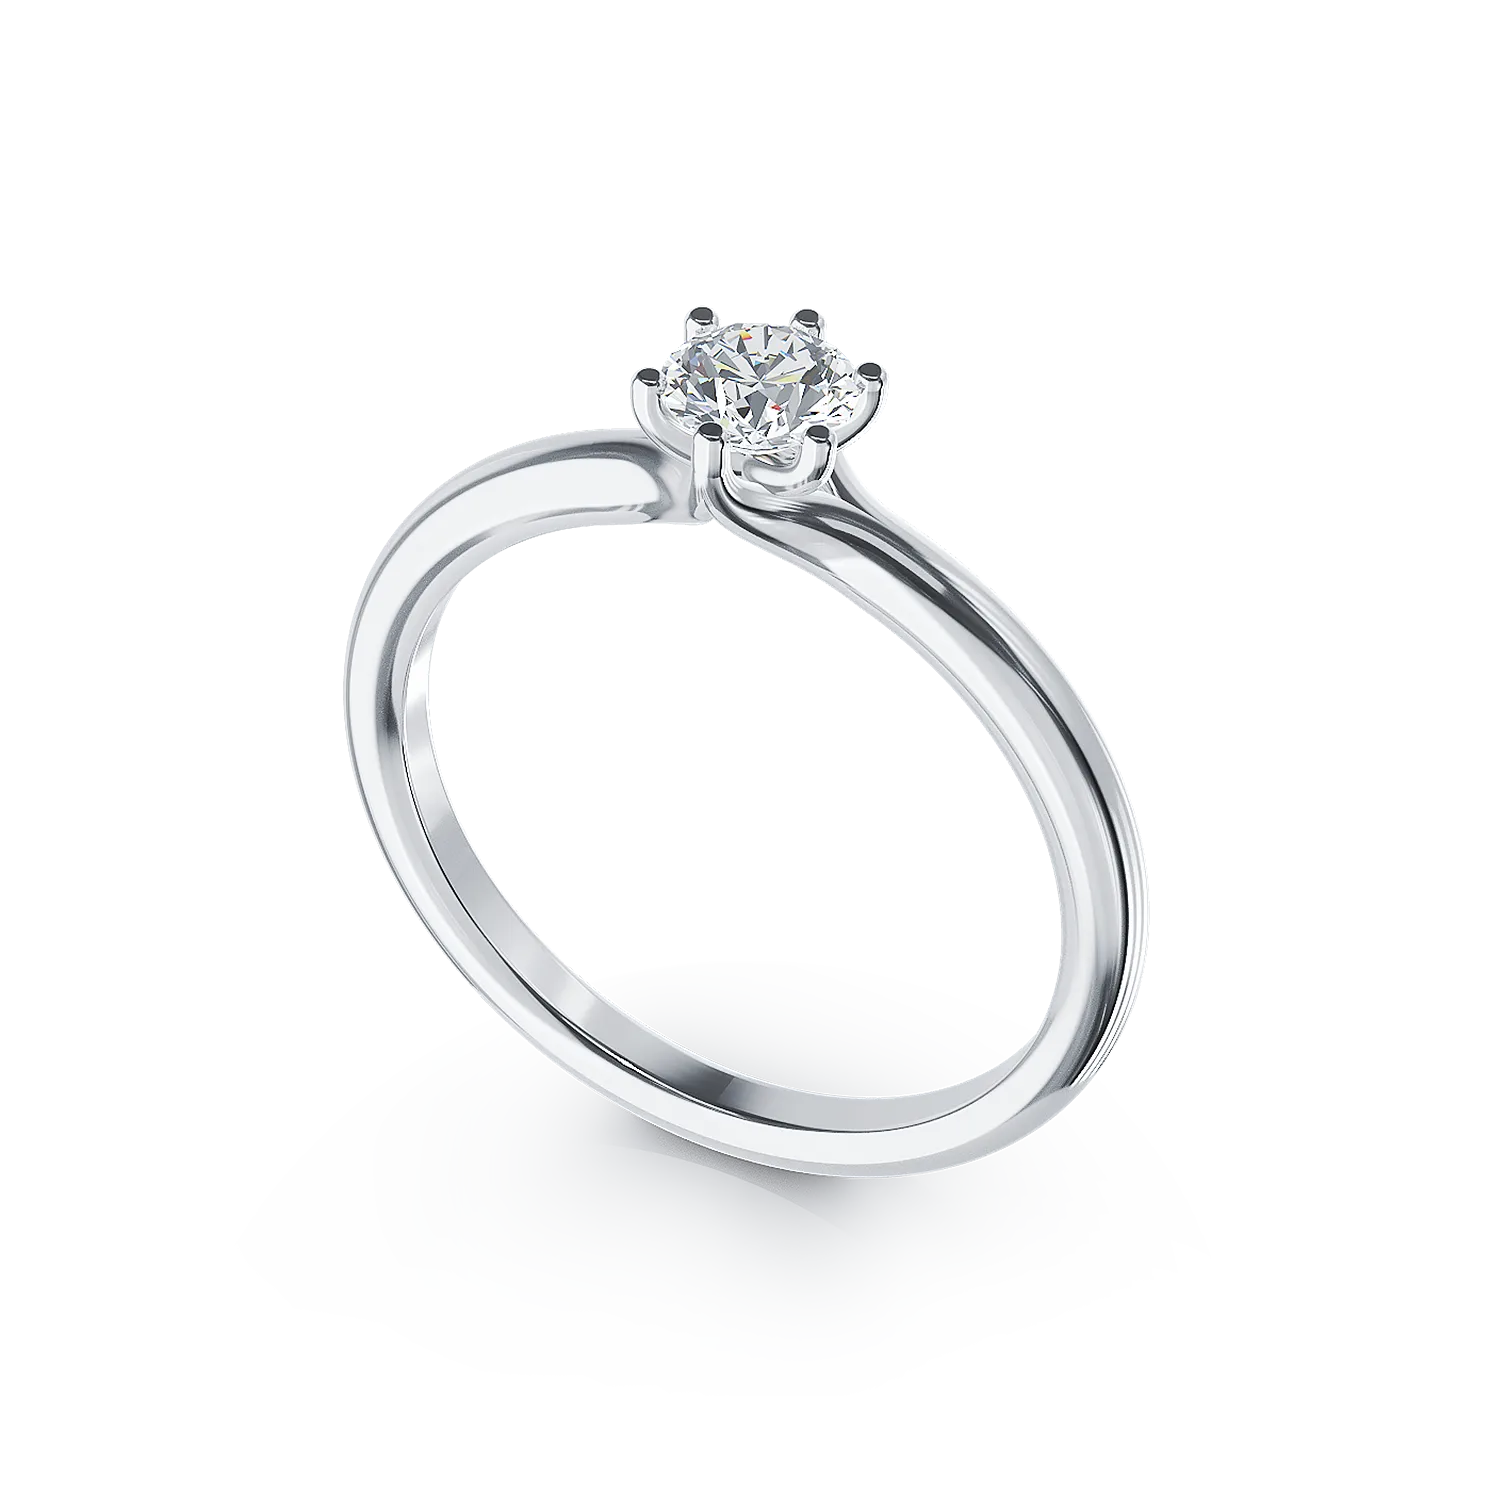 Inel de logodna din aur alb de 18K cu un diamant solitaire de 0.31ct